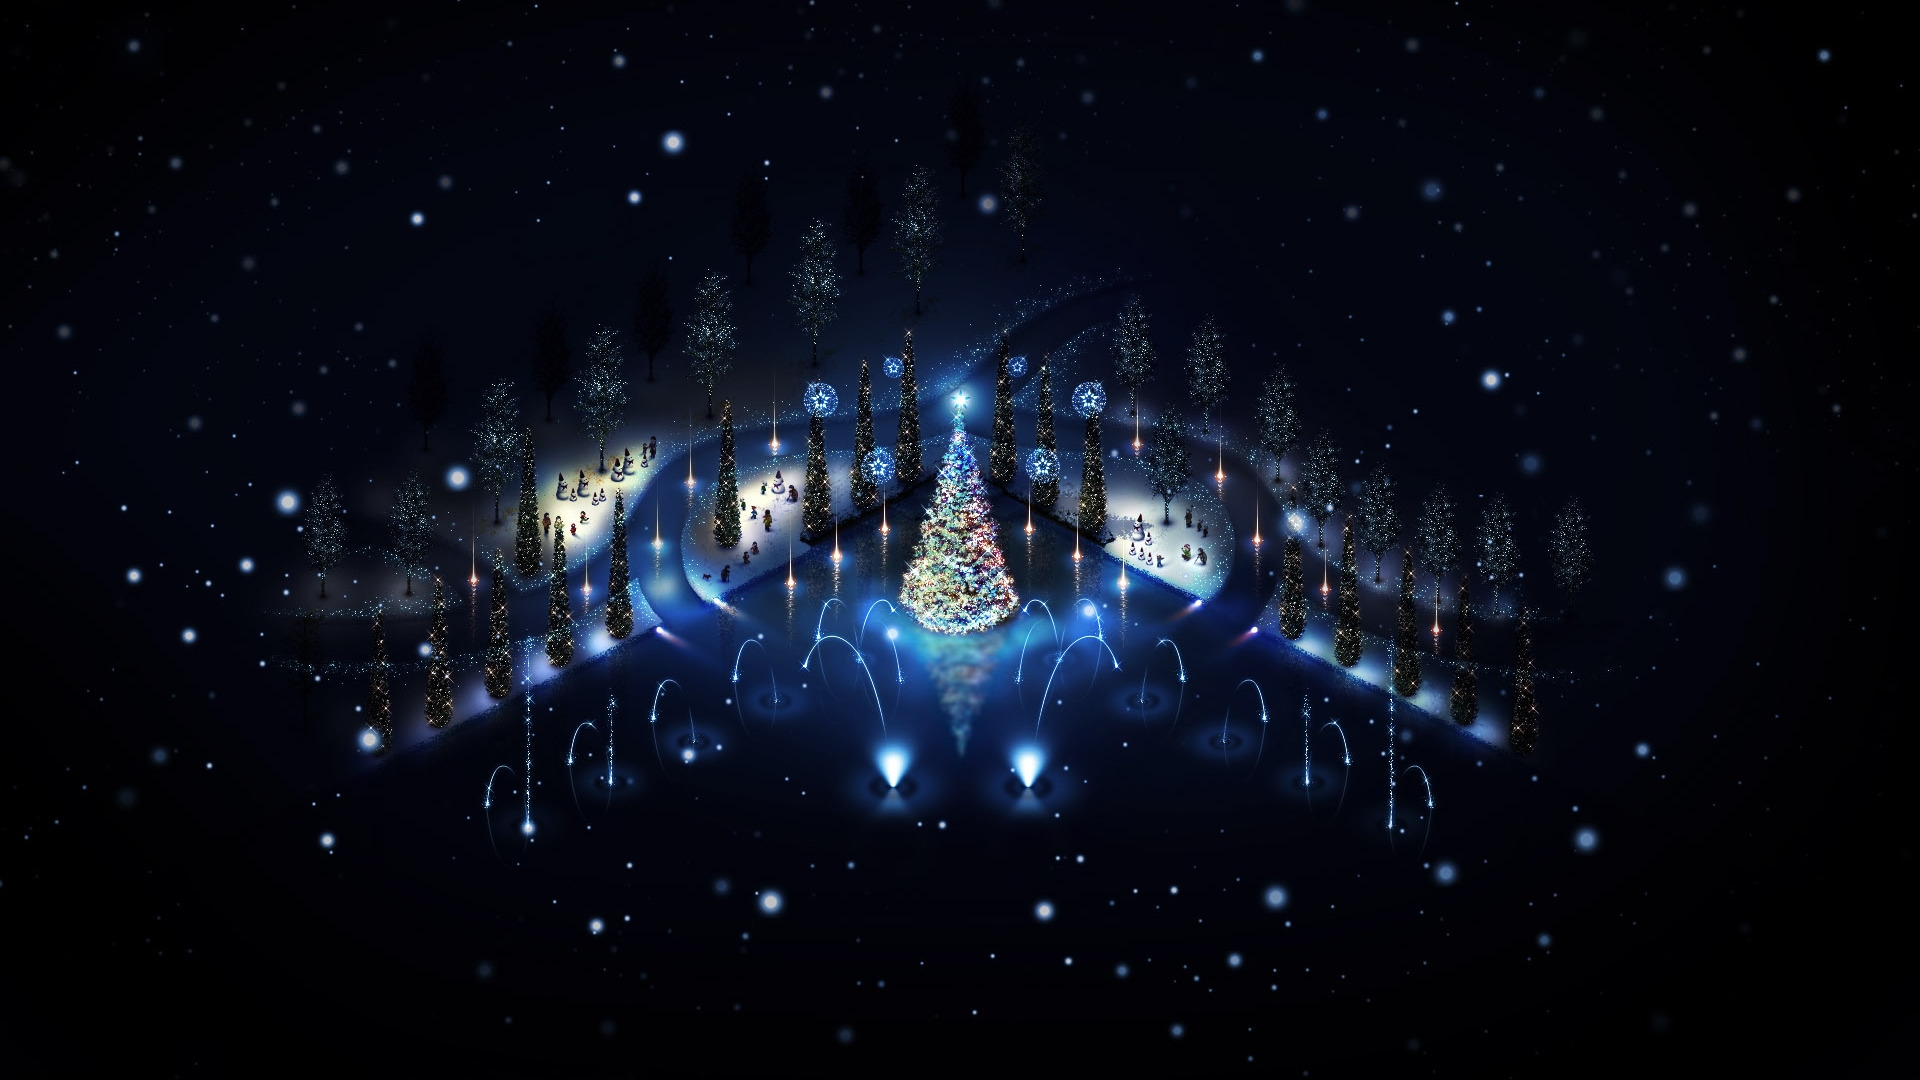 Lovely Christmas Trees Lighting for 1920 x 1080 HDTV 1080p resolution